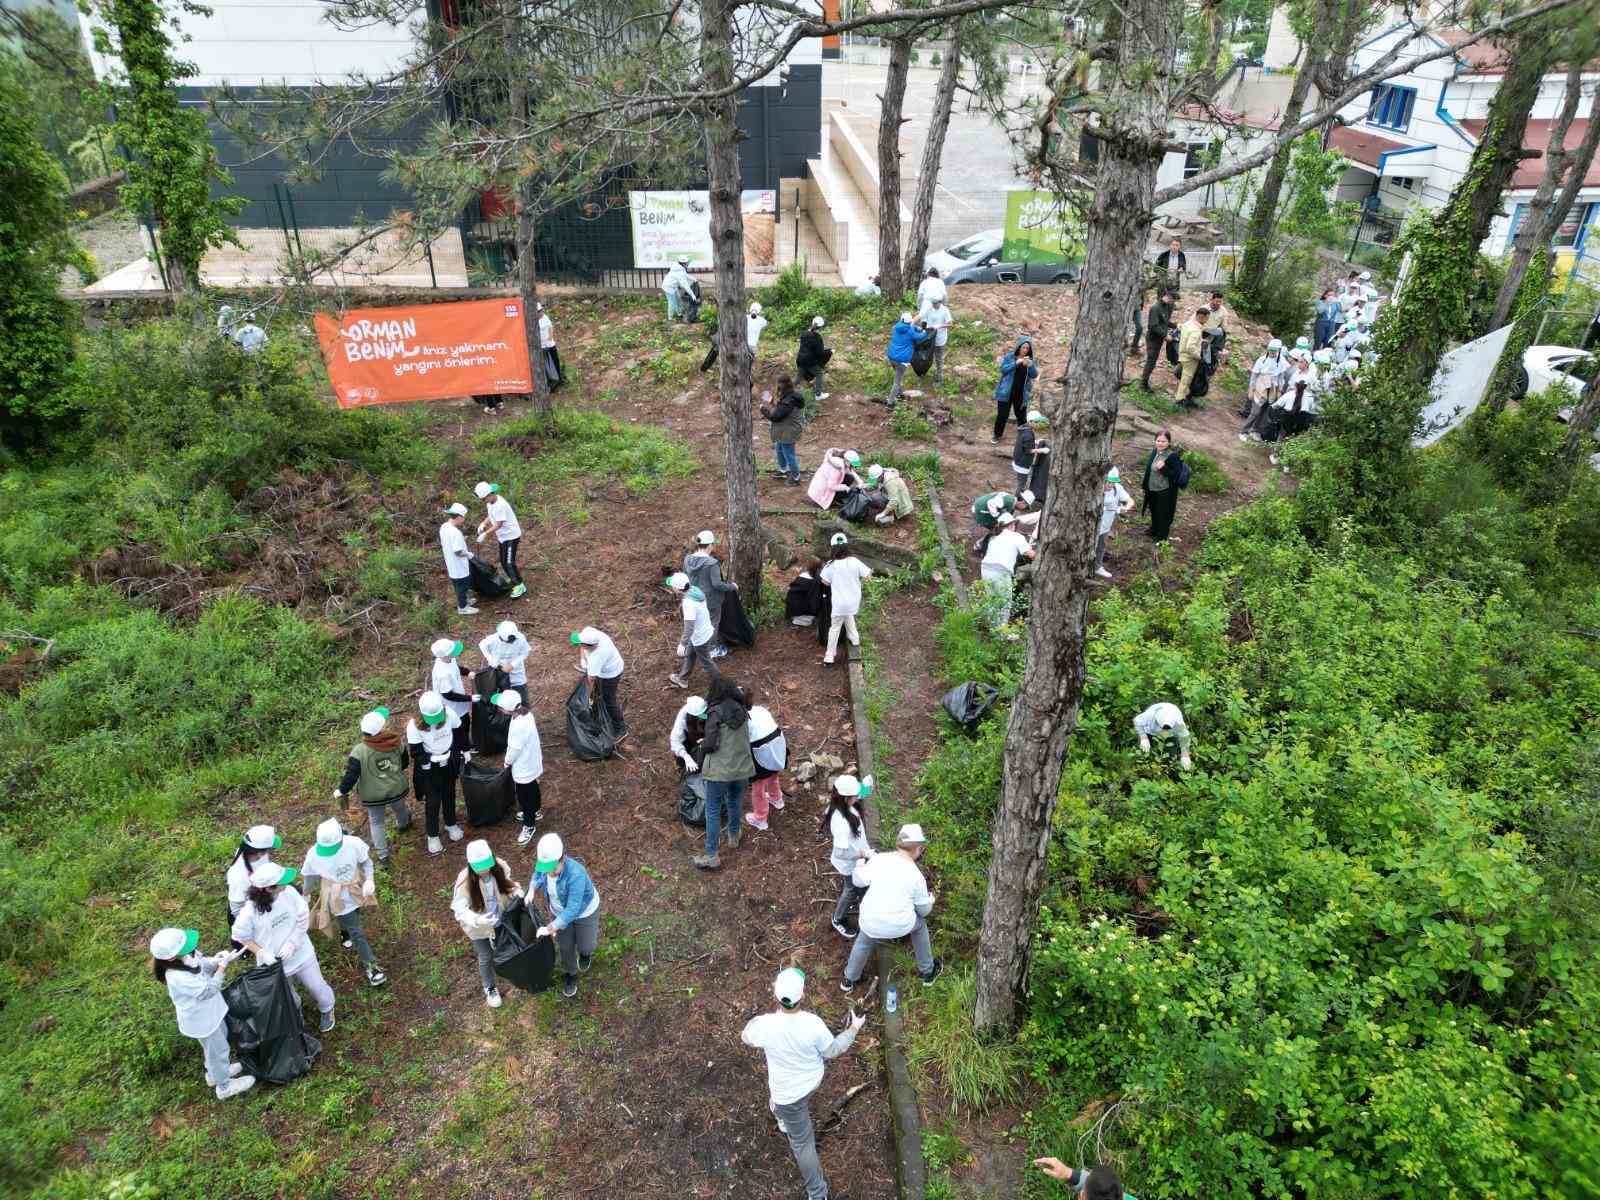 Atatürk Ortaokul Öğrencileri “Orman Benim” kampanyasına katıldı
